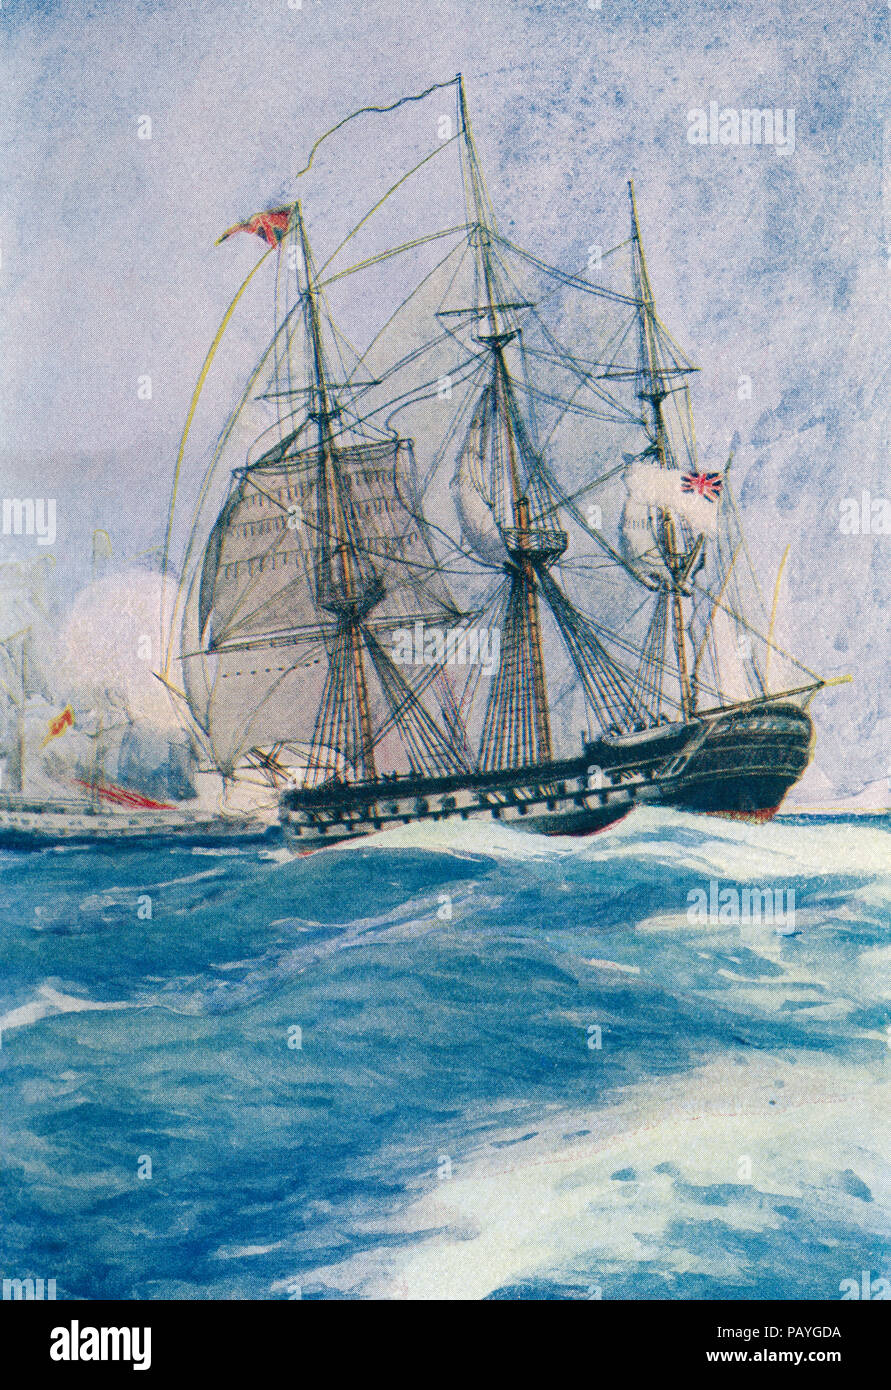 Ein Mann-o-Krieg im Nelson's Tag. Aus dem Buch von Schiffen, veröffentlicht C 1920. Stockfoto